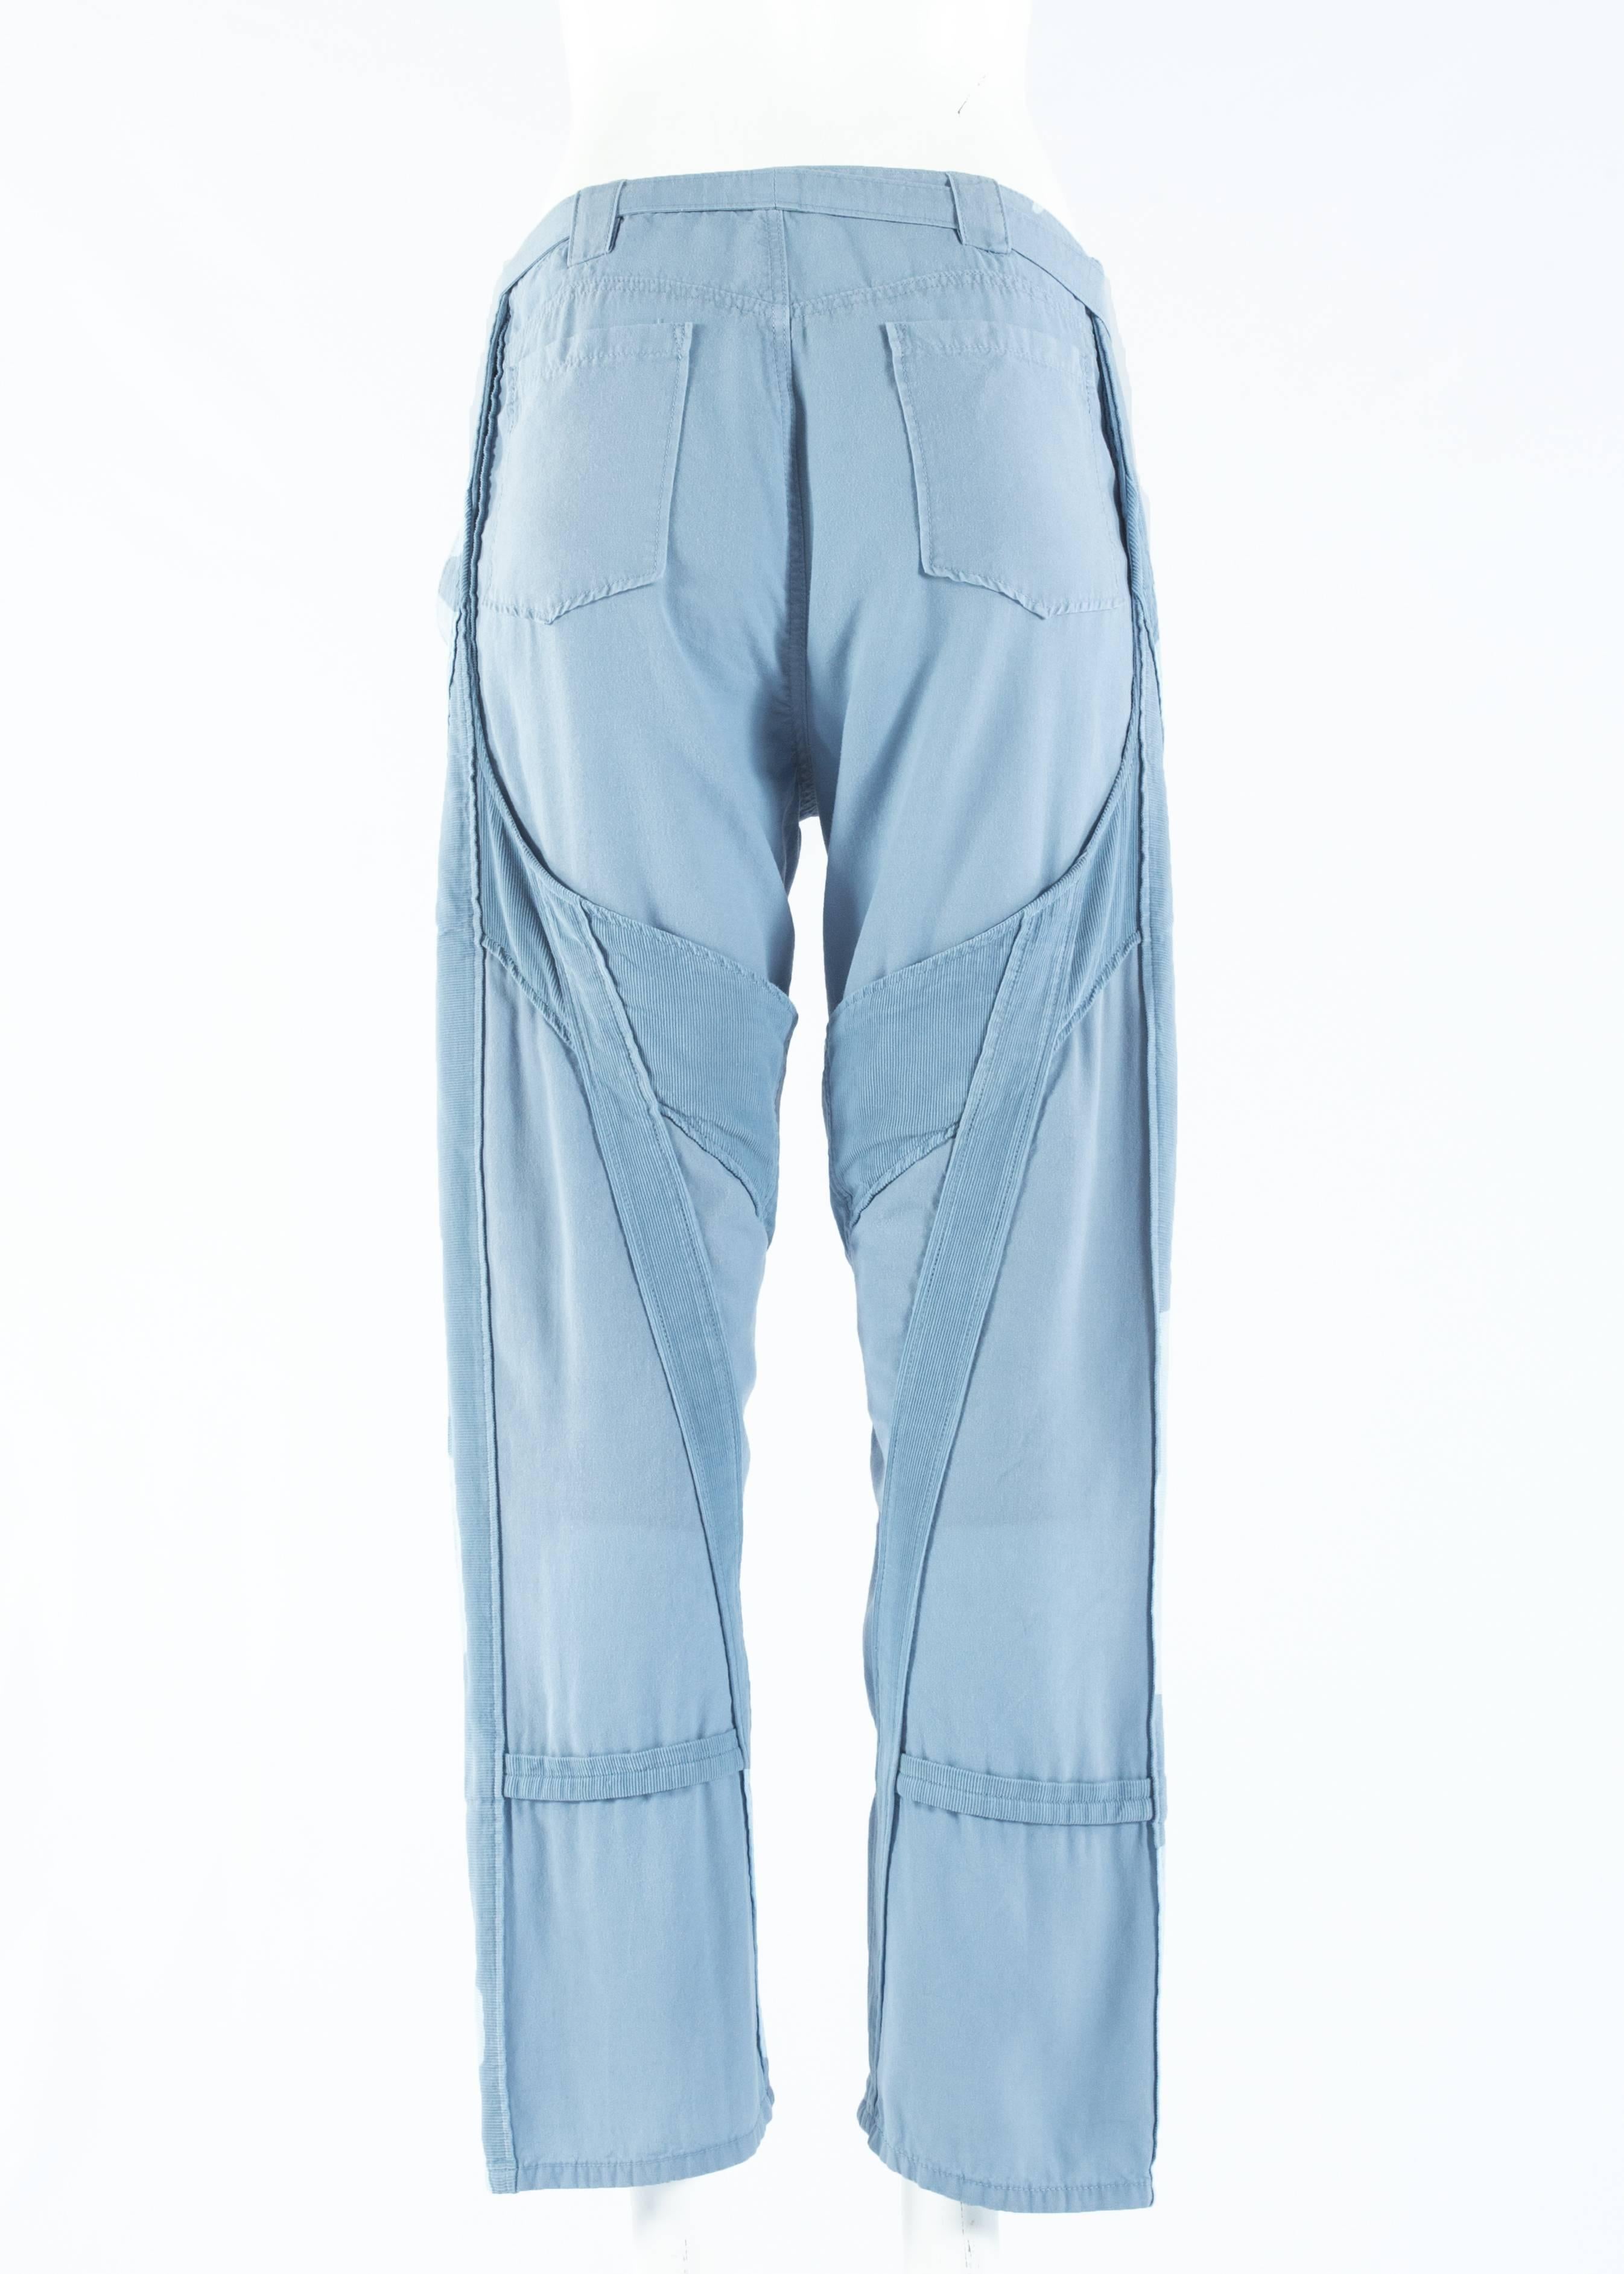 Women's Balenciaga by Nicolas Ghesquière blue cotton and corduroy cargo pants, ss 2002